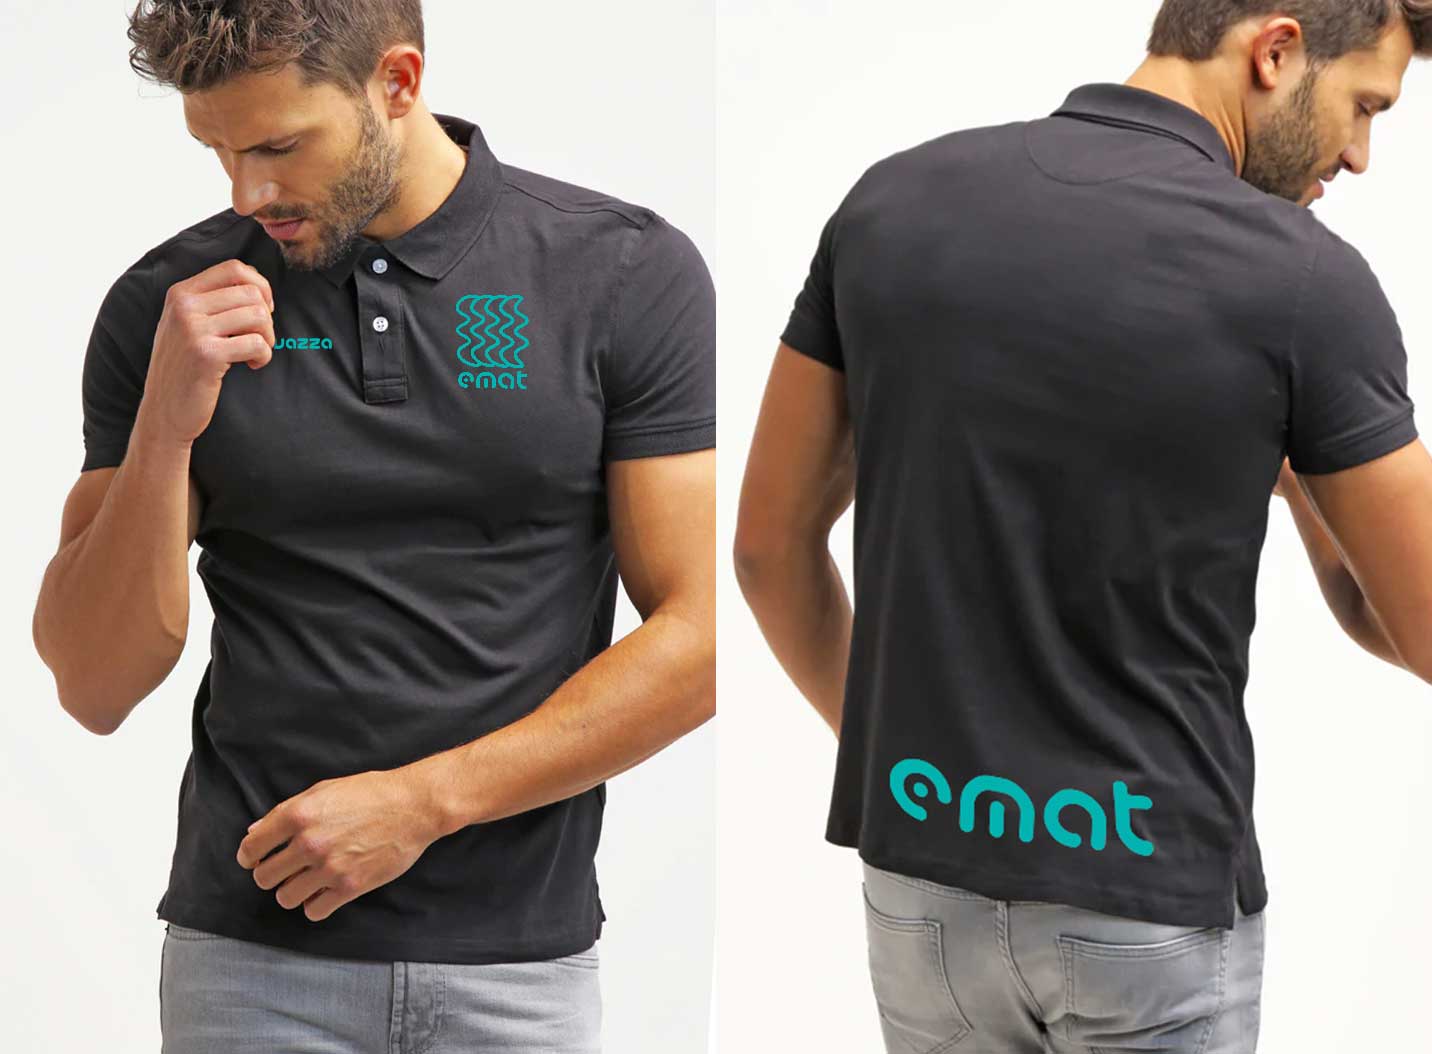 EMAT Digital Marketing – Creazione abbigliamento personalizzato brandizzato